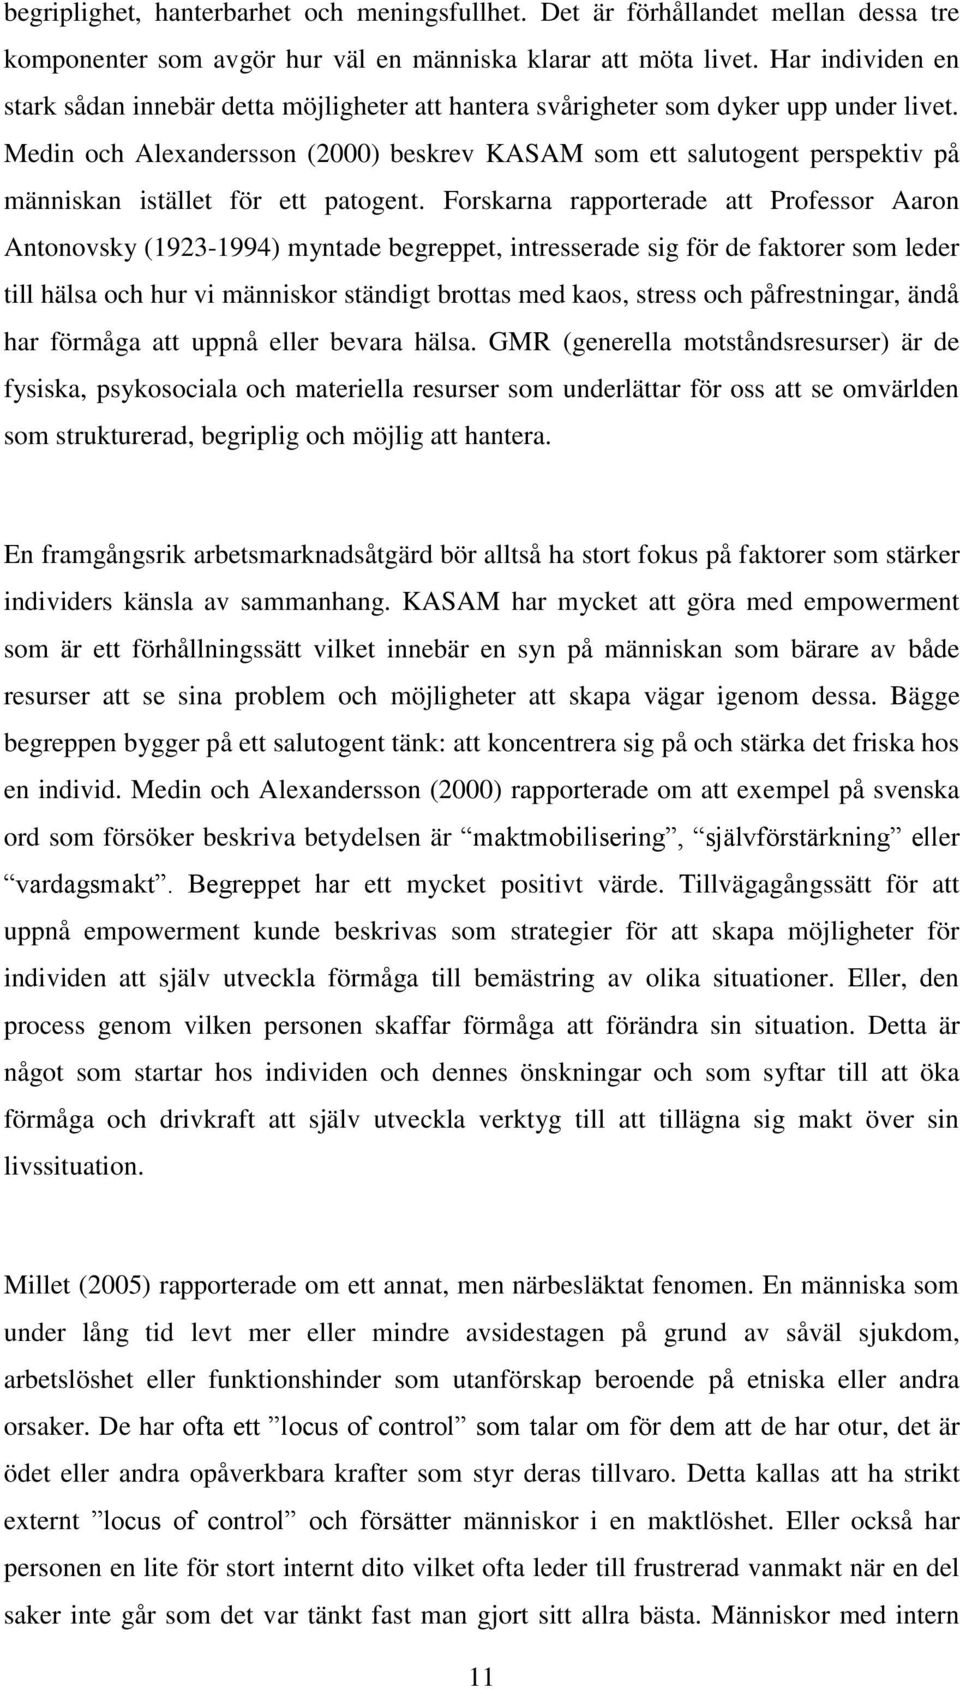 Medin och Alexandersson (2000) beskrev KASAM som ett salutogent perspektiv på människan istället för ett patogent.